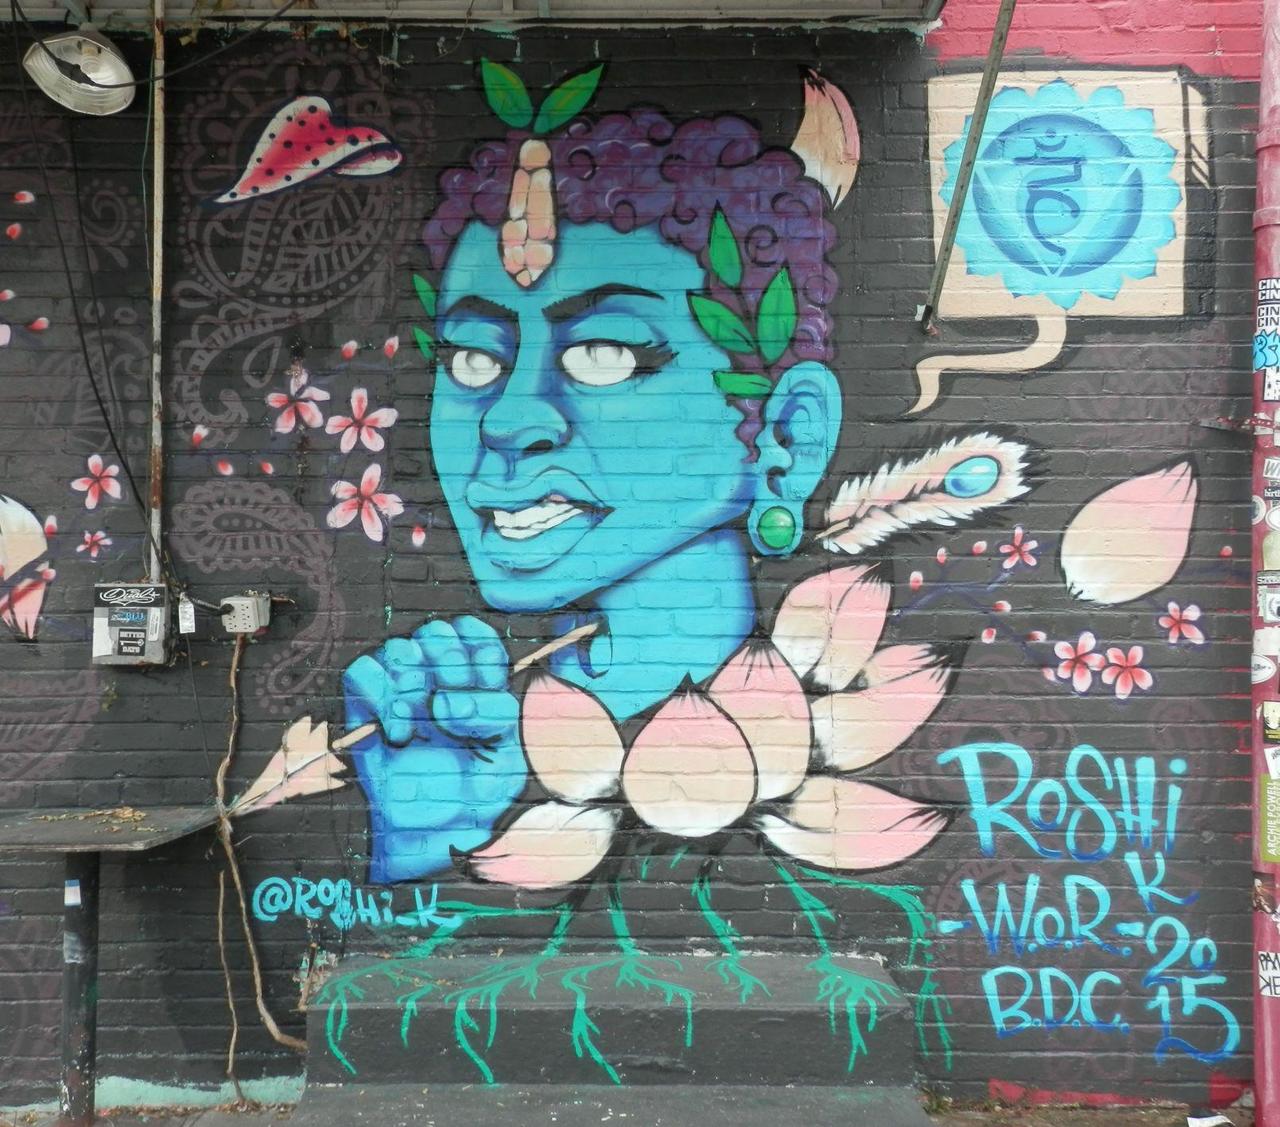 RT @JohnRMoffitt: #Houston #Graffiti #Streetart Roshi's completed work for Meeting of Styles 2015. http://t.co/IlpyDZhSu8